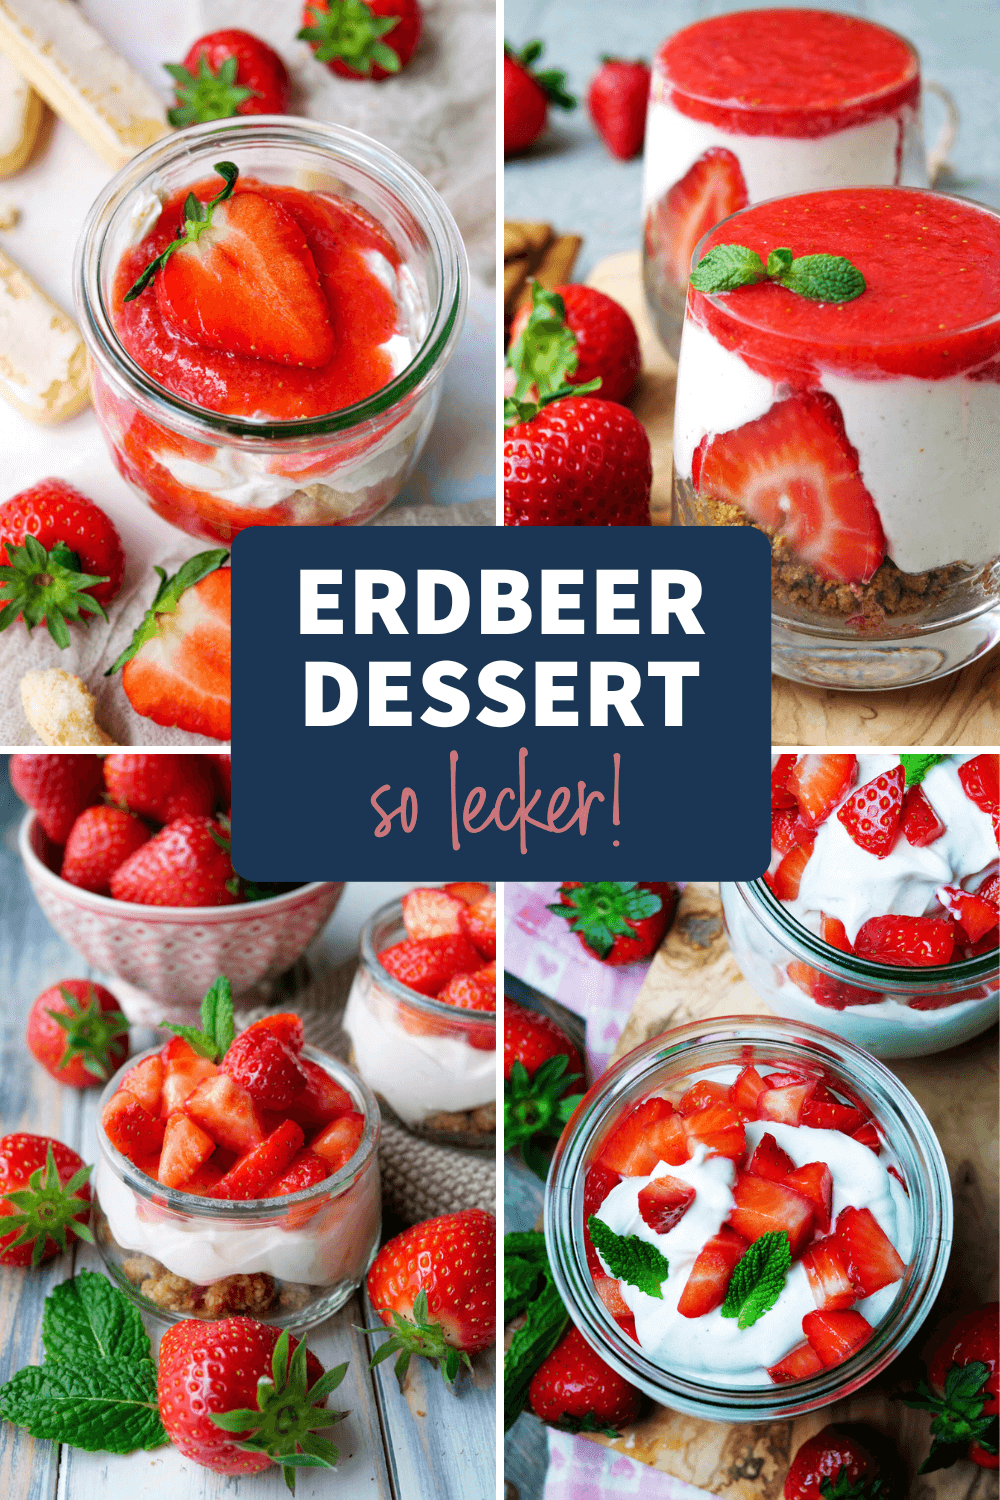 Erdbeer-Dessert – Nachtisch mit Erdbeeren